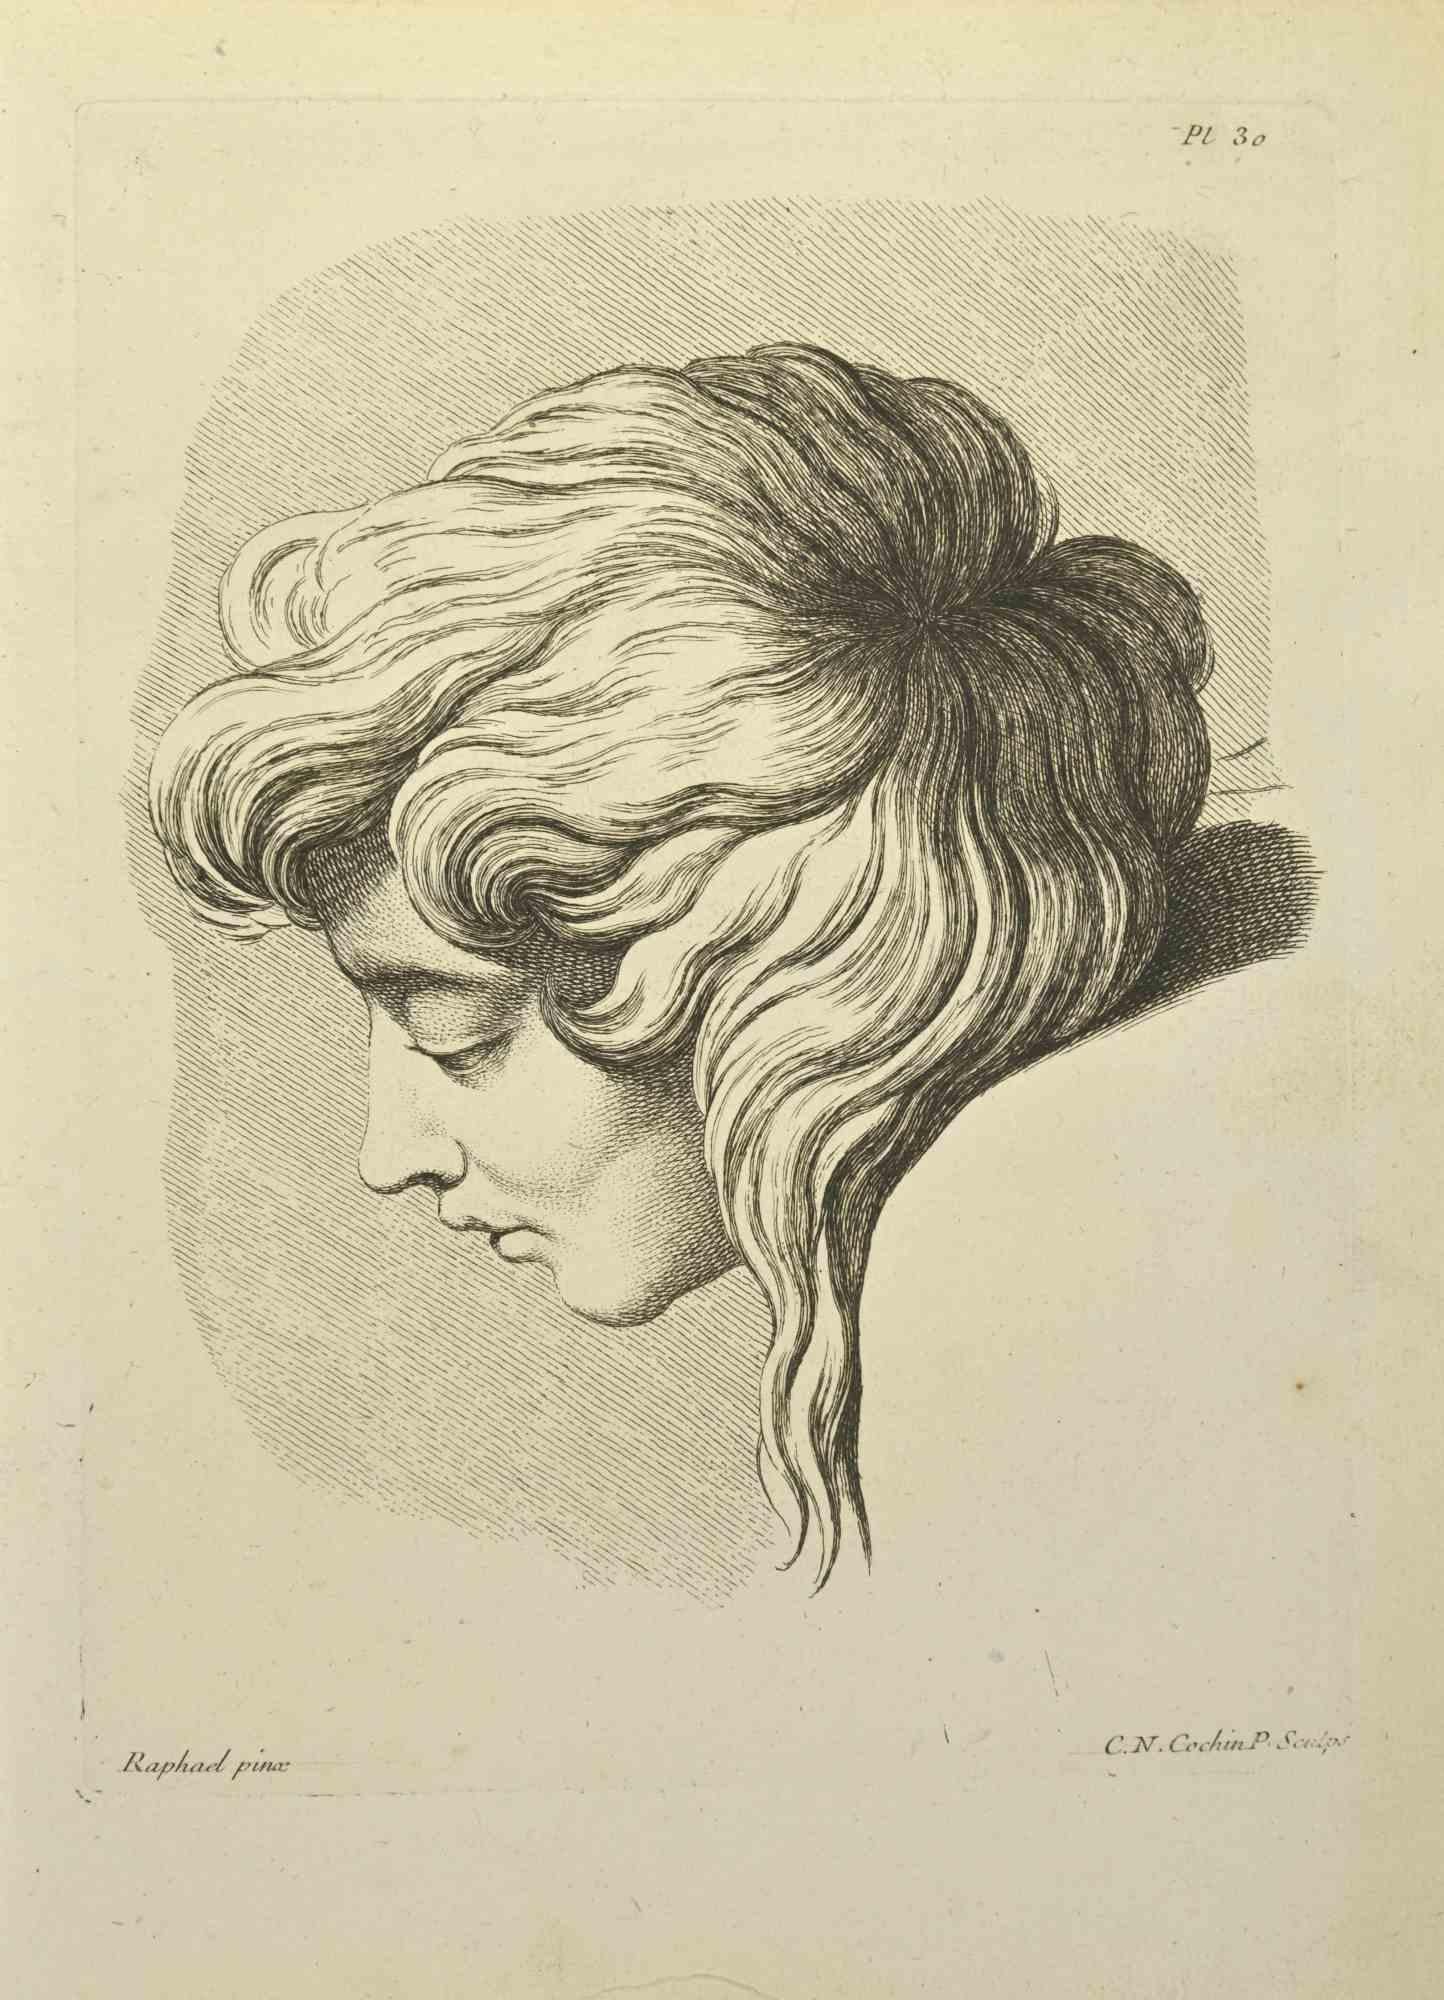 Das Porträt nach Raphael ist eine Radierung von Nicholas Cochin aus dem Jahr 1755.

Signiert auf der Platte.

Gute Bedingungen.

Das Kunstwerk wird mit sicheren Strichen dargestellt.

Die Radierung wurde für die Anatomie-Studie "JOMBERT,